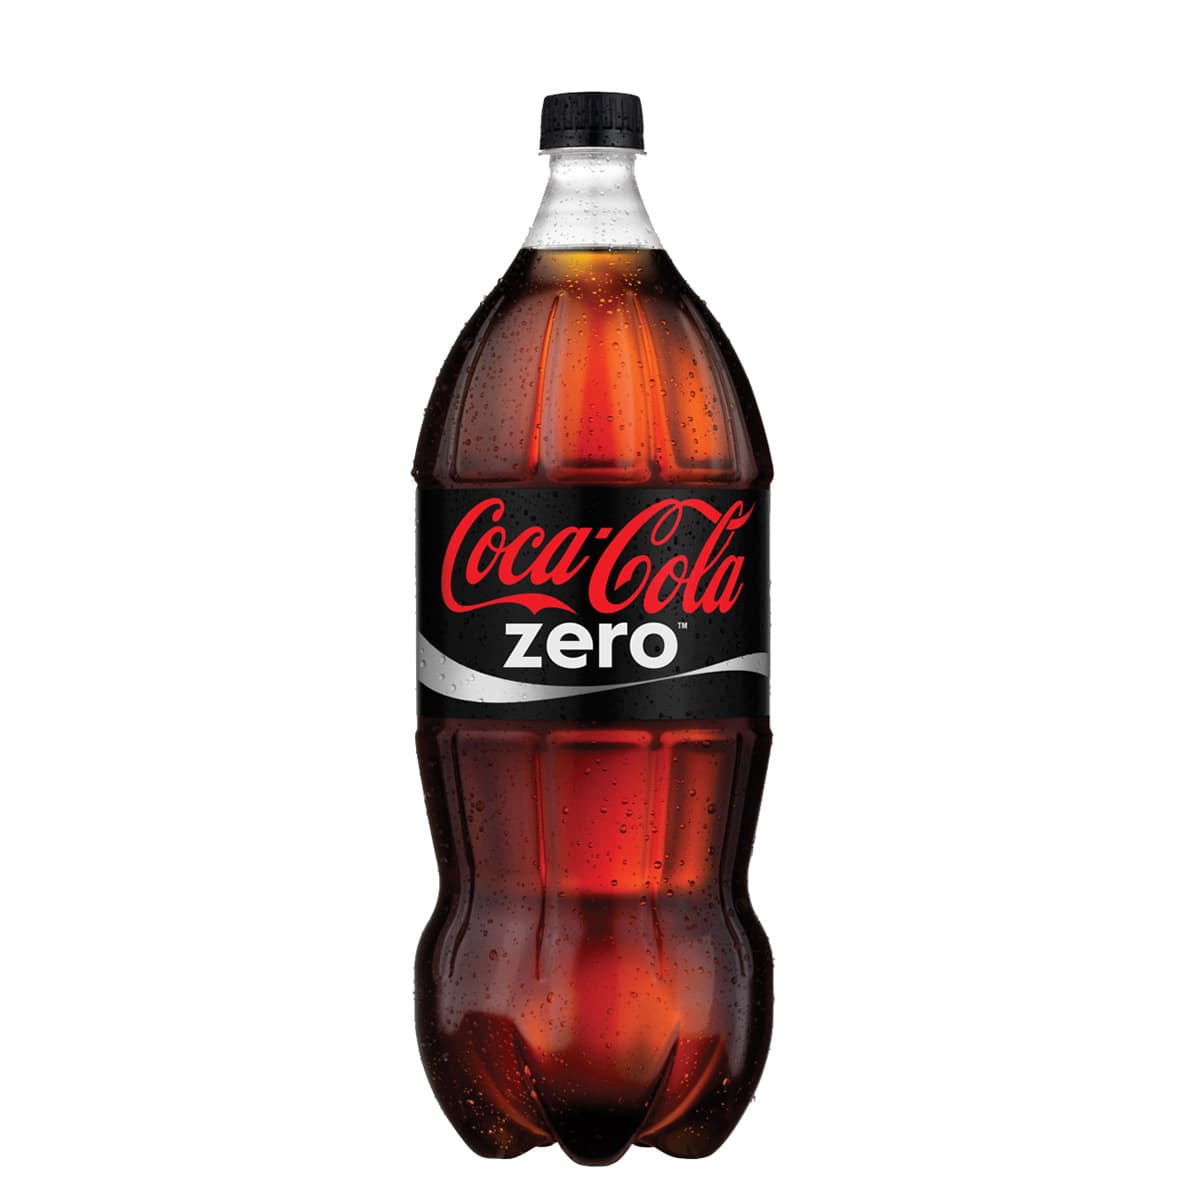 Coca-cola garrafa zero